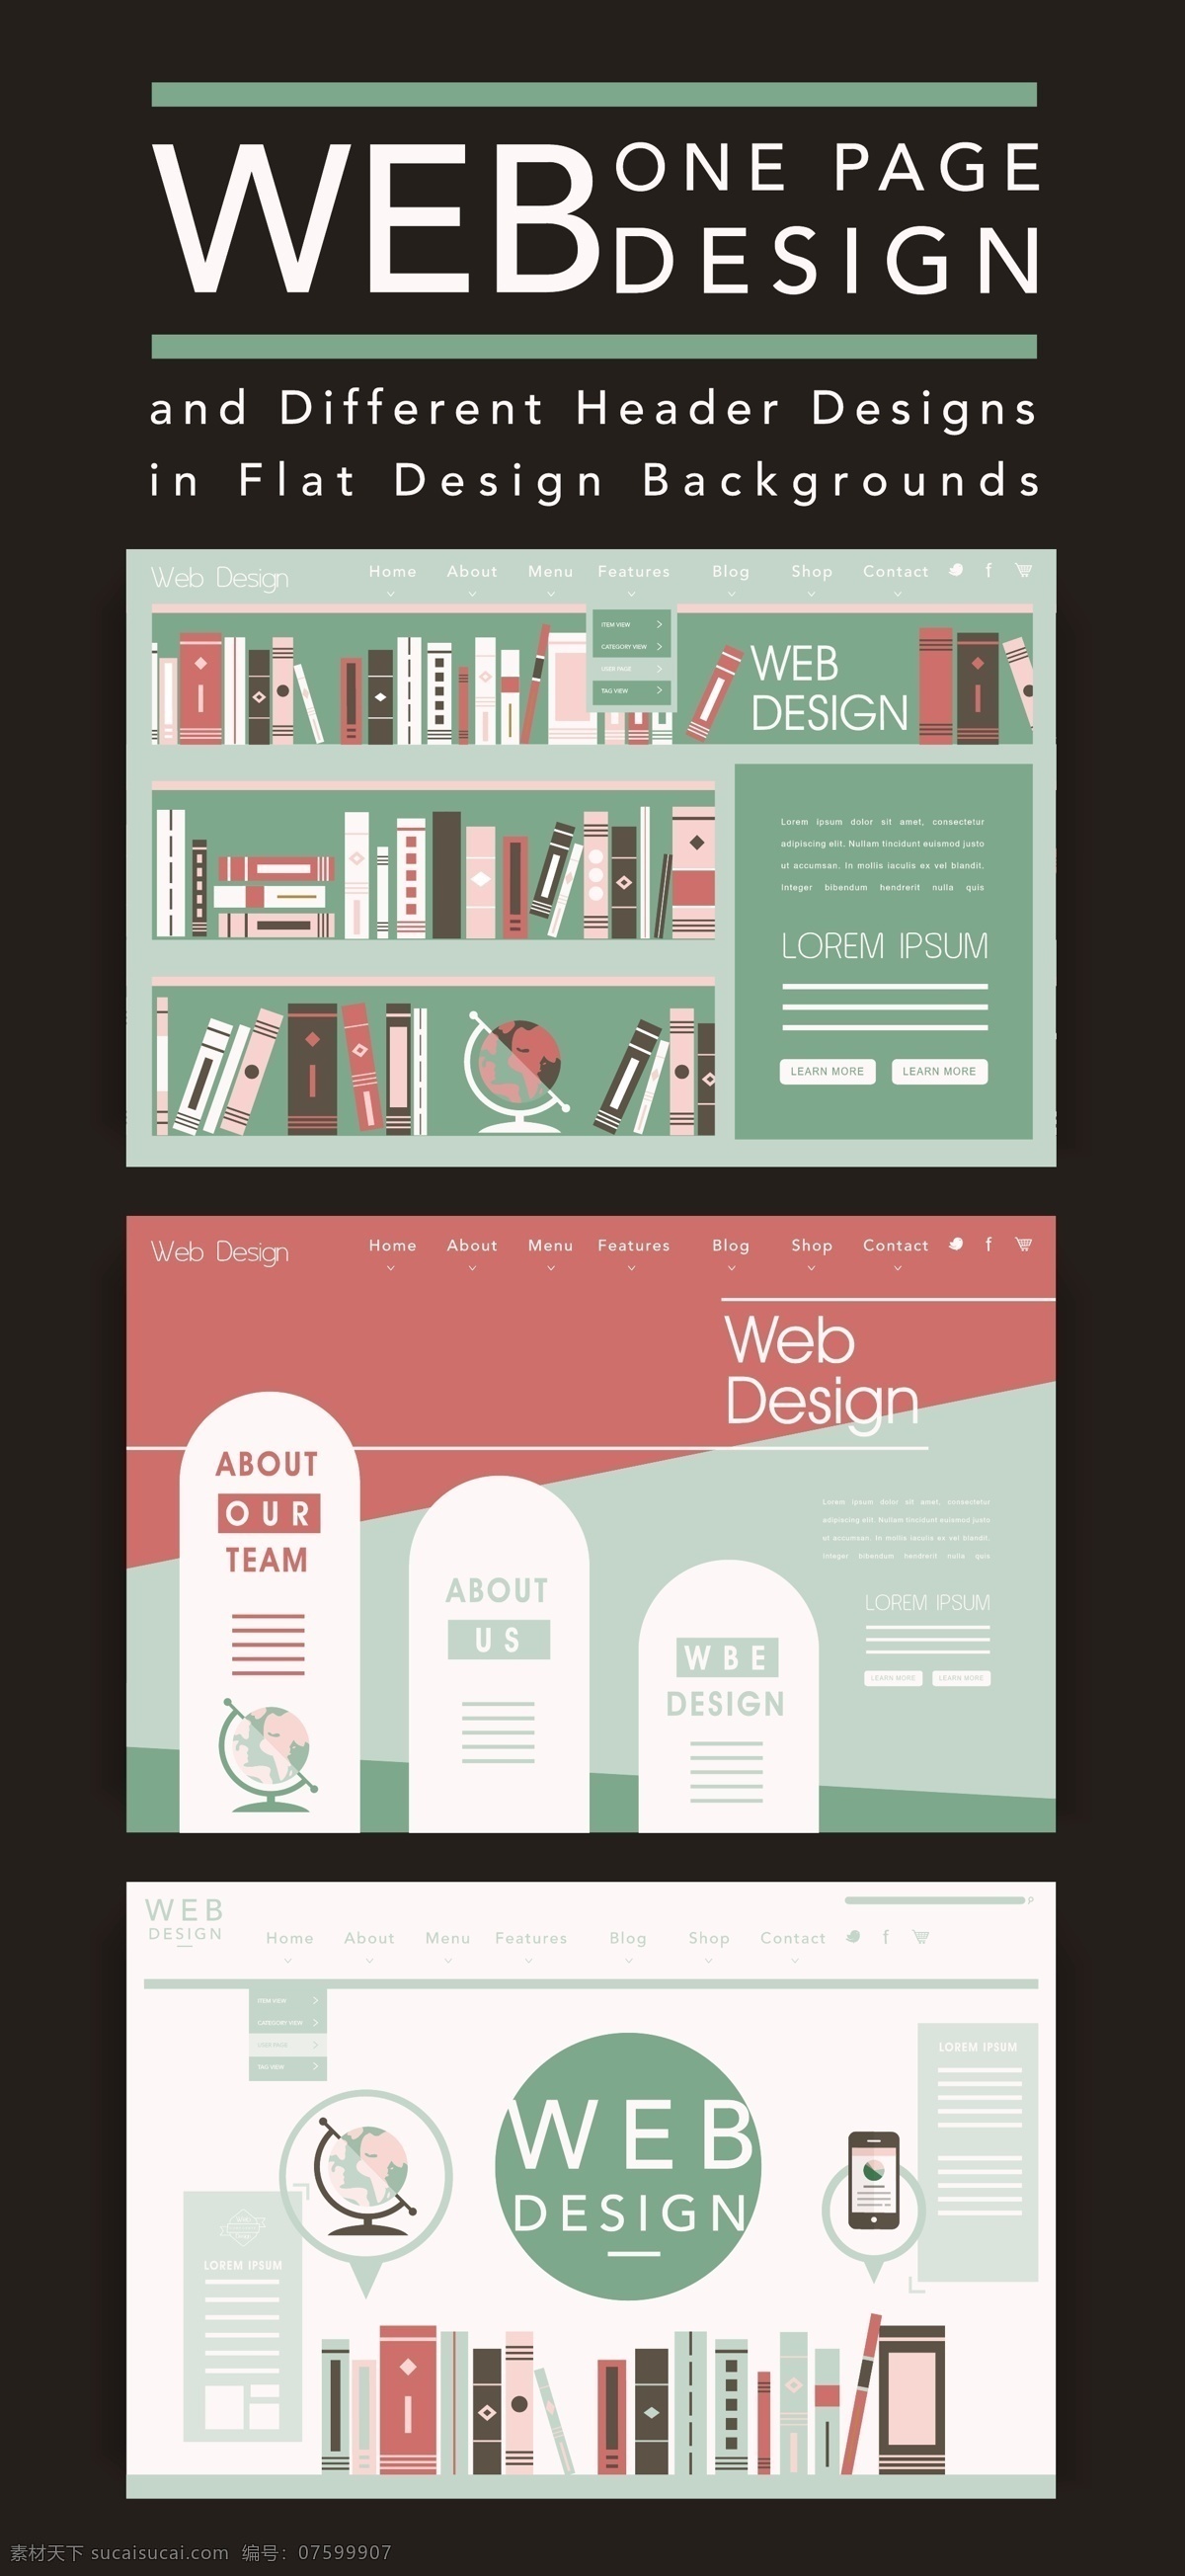 网页设计素材 网页设计 网页素材 网页 web 界面设计 英文模板